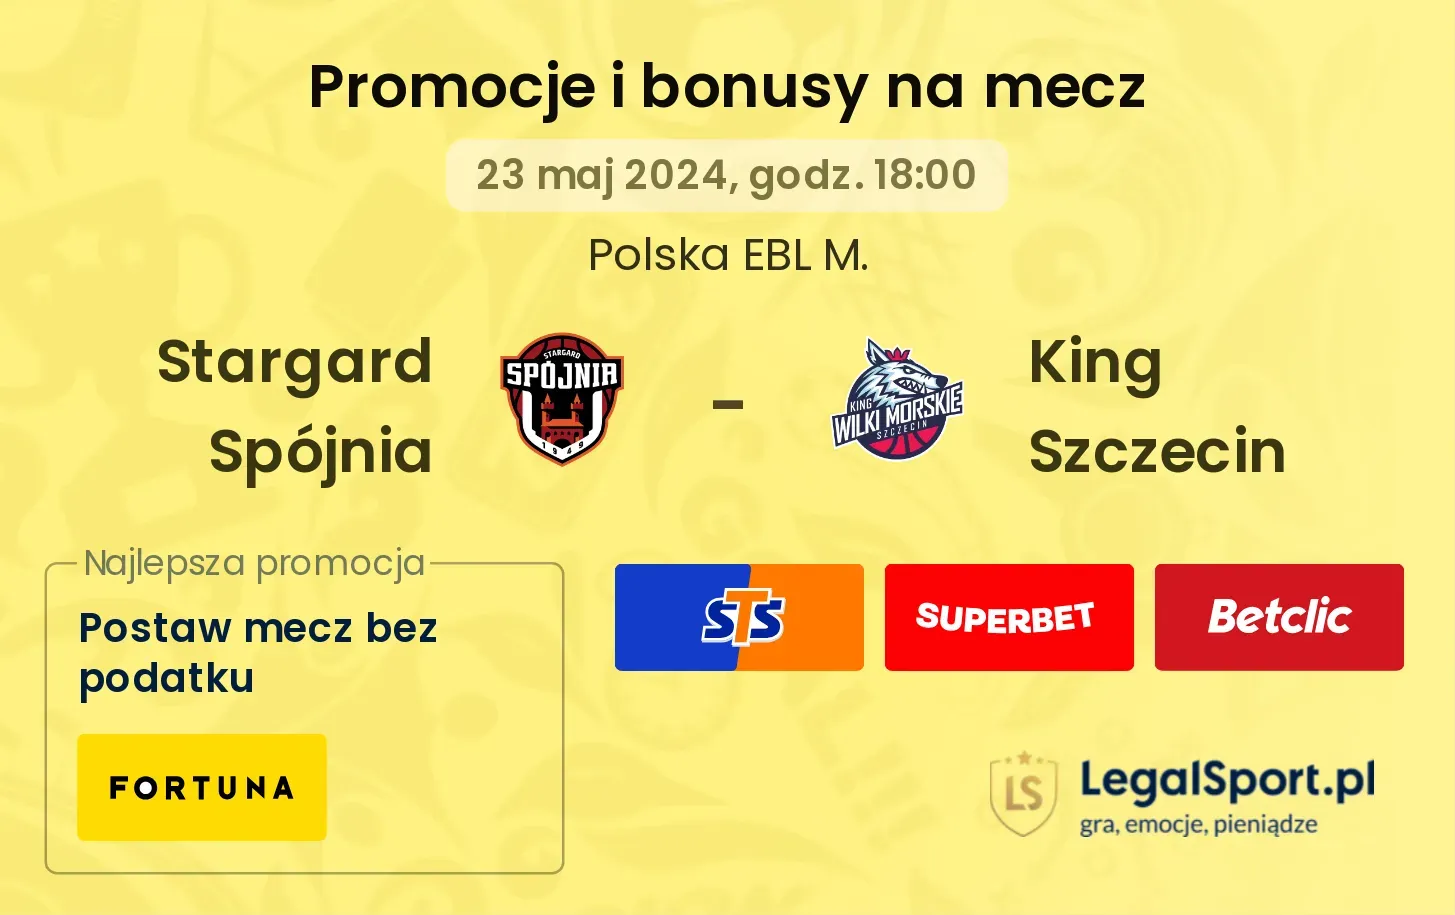 Stargard Spójnia - King Szczecin promocje bonusy na mecz